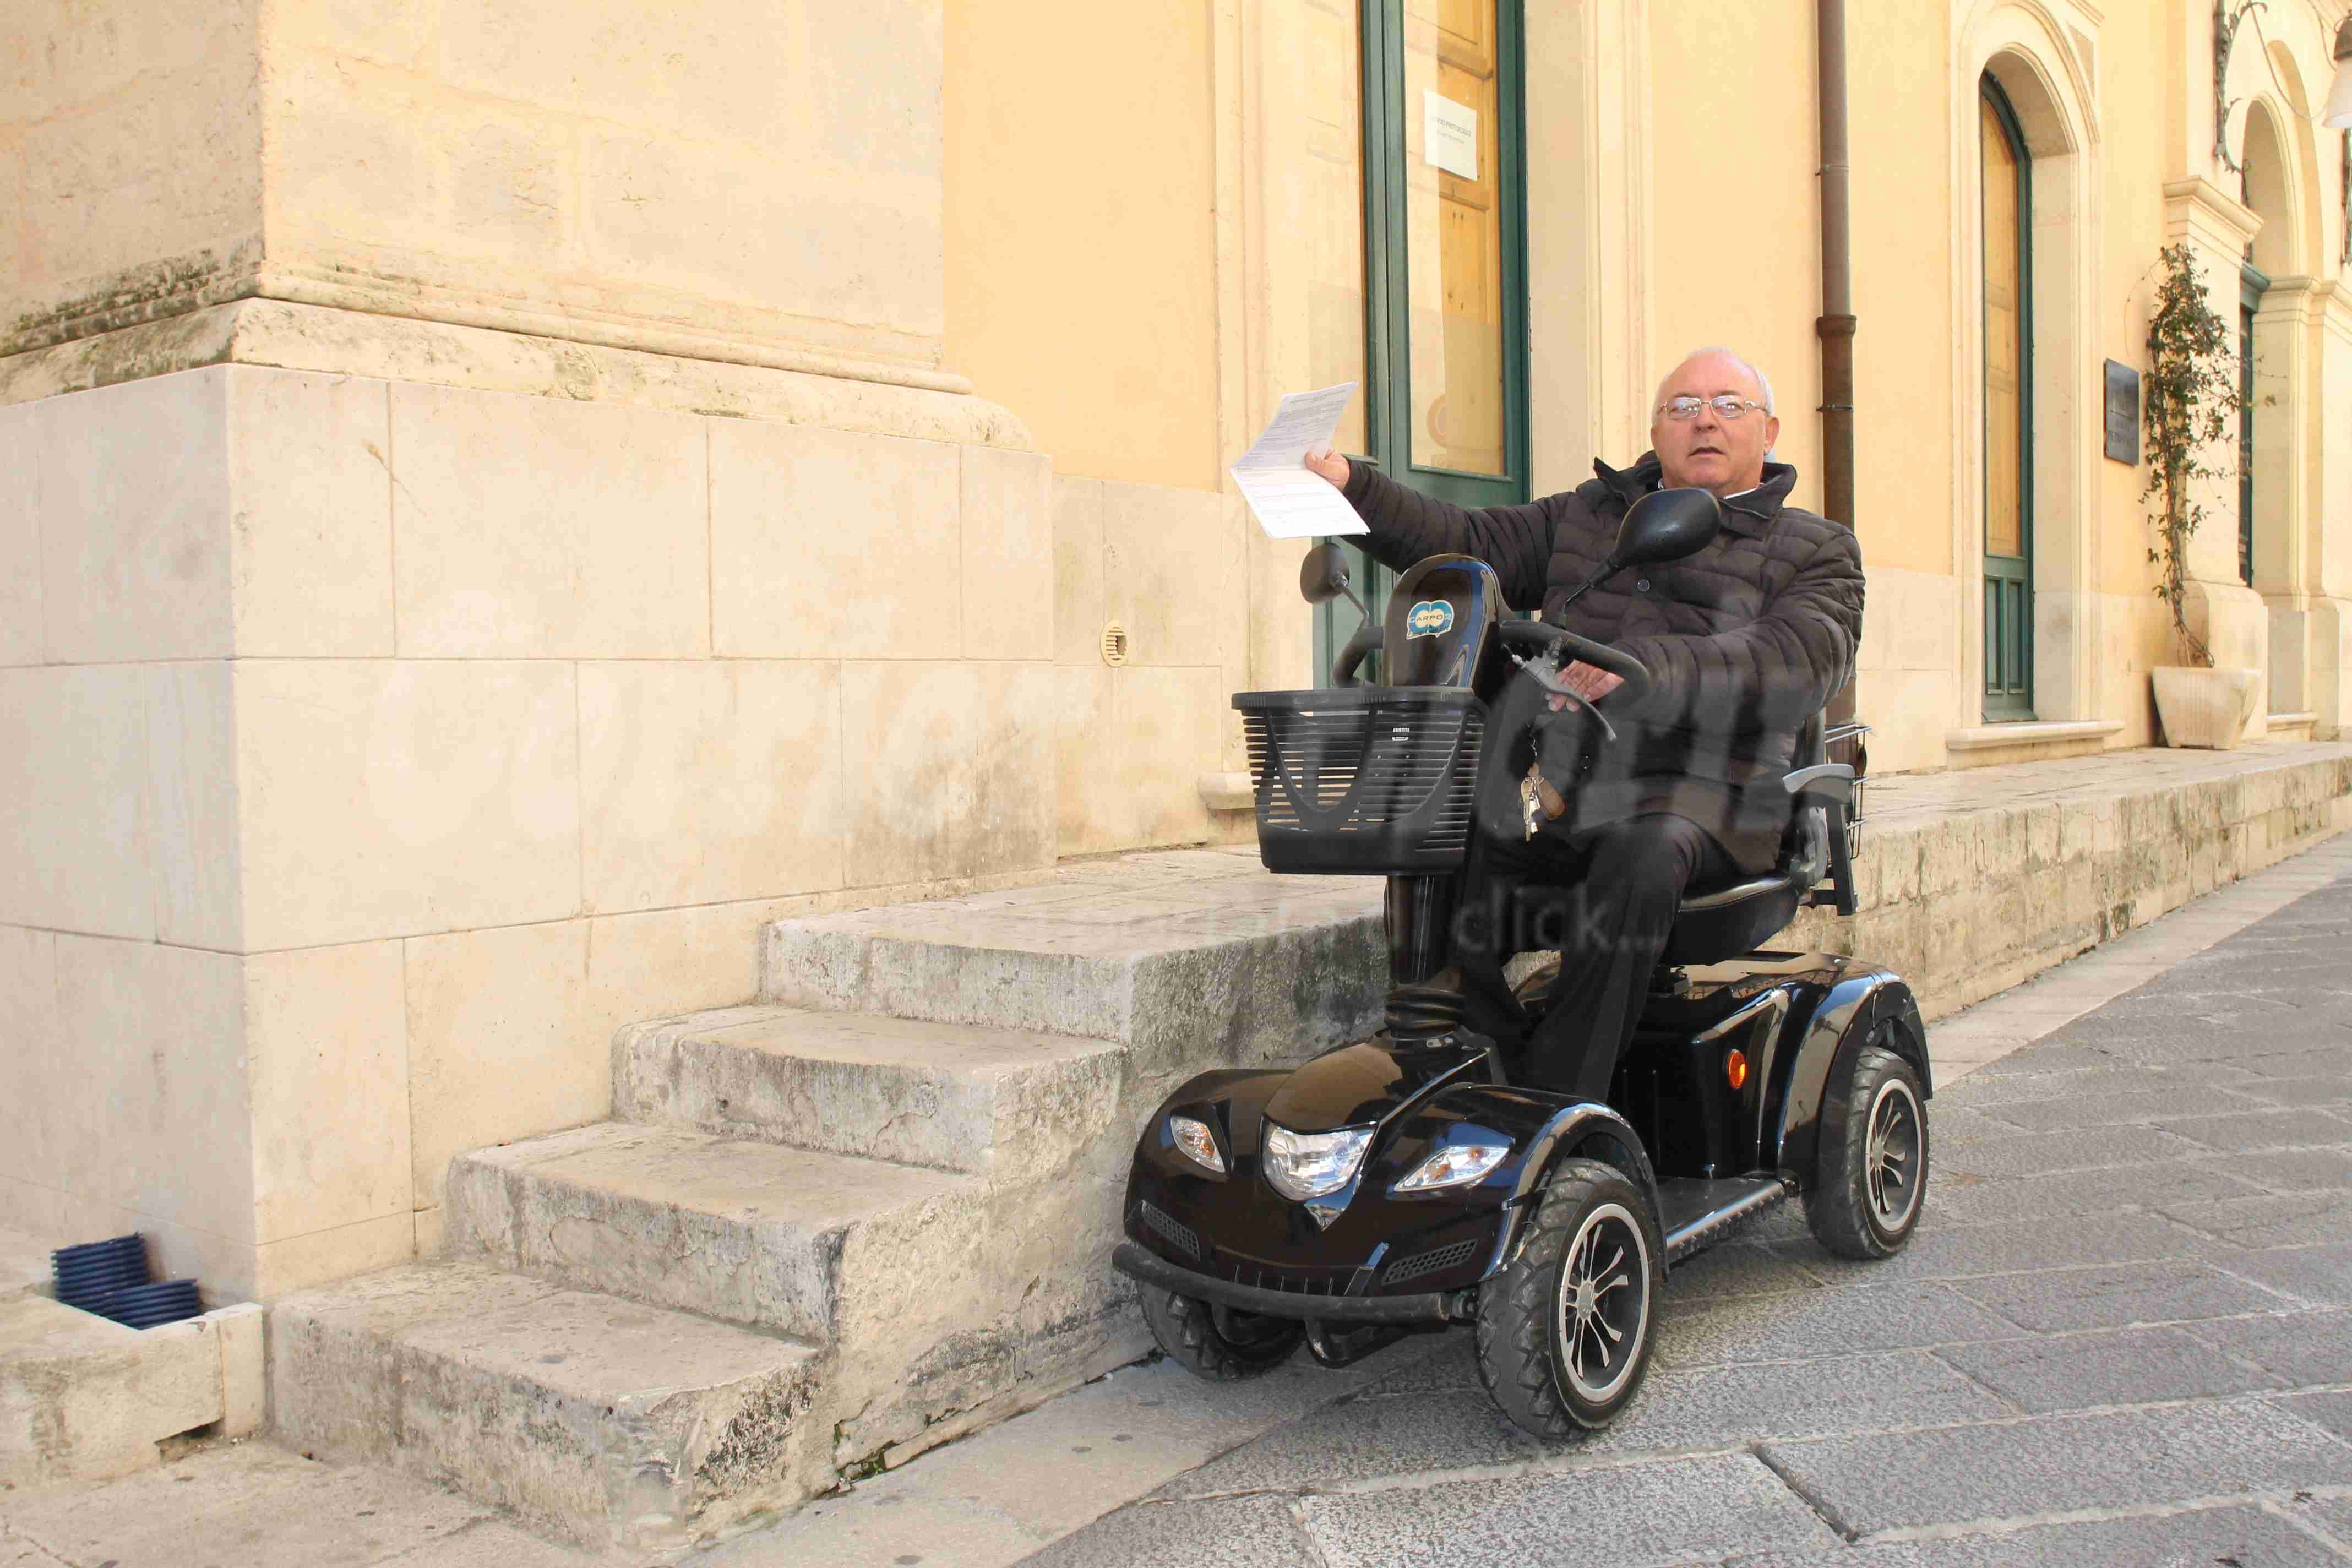 “Ufficio protocollo inaccessibile a disabili e anziani”, la denuncia del Movimento Etica